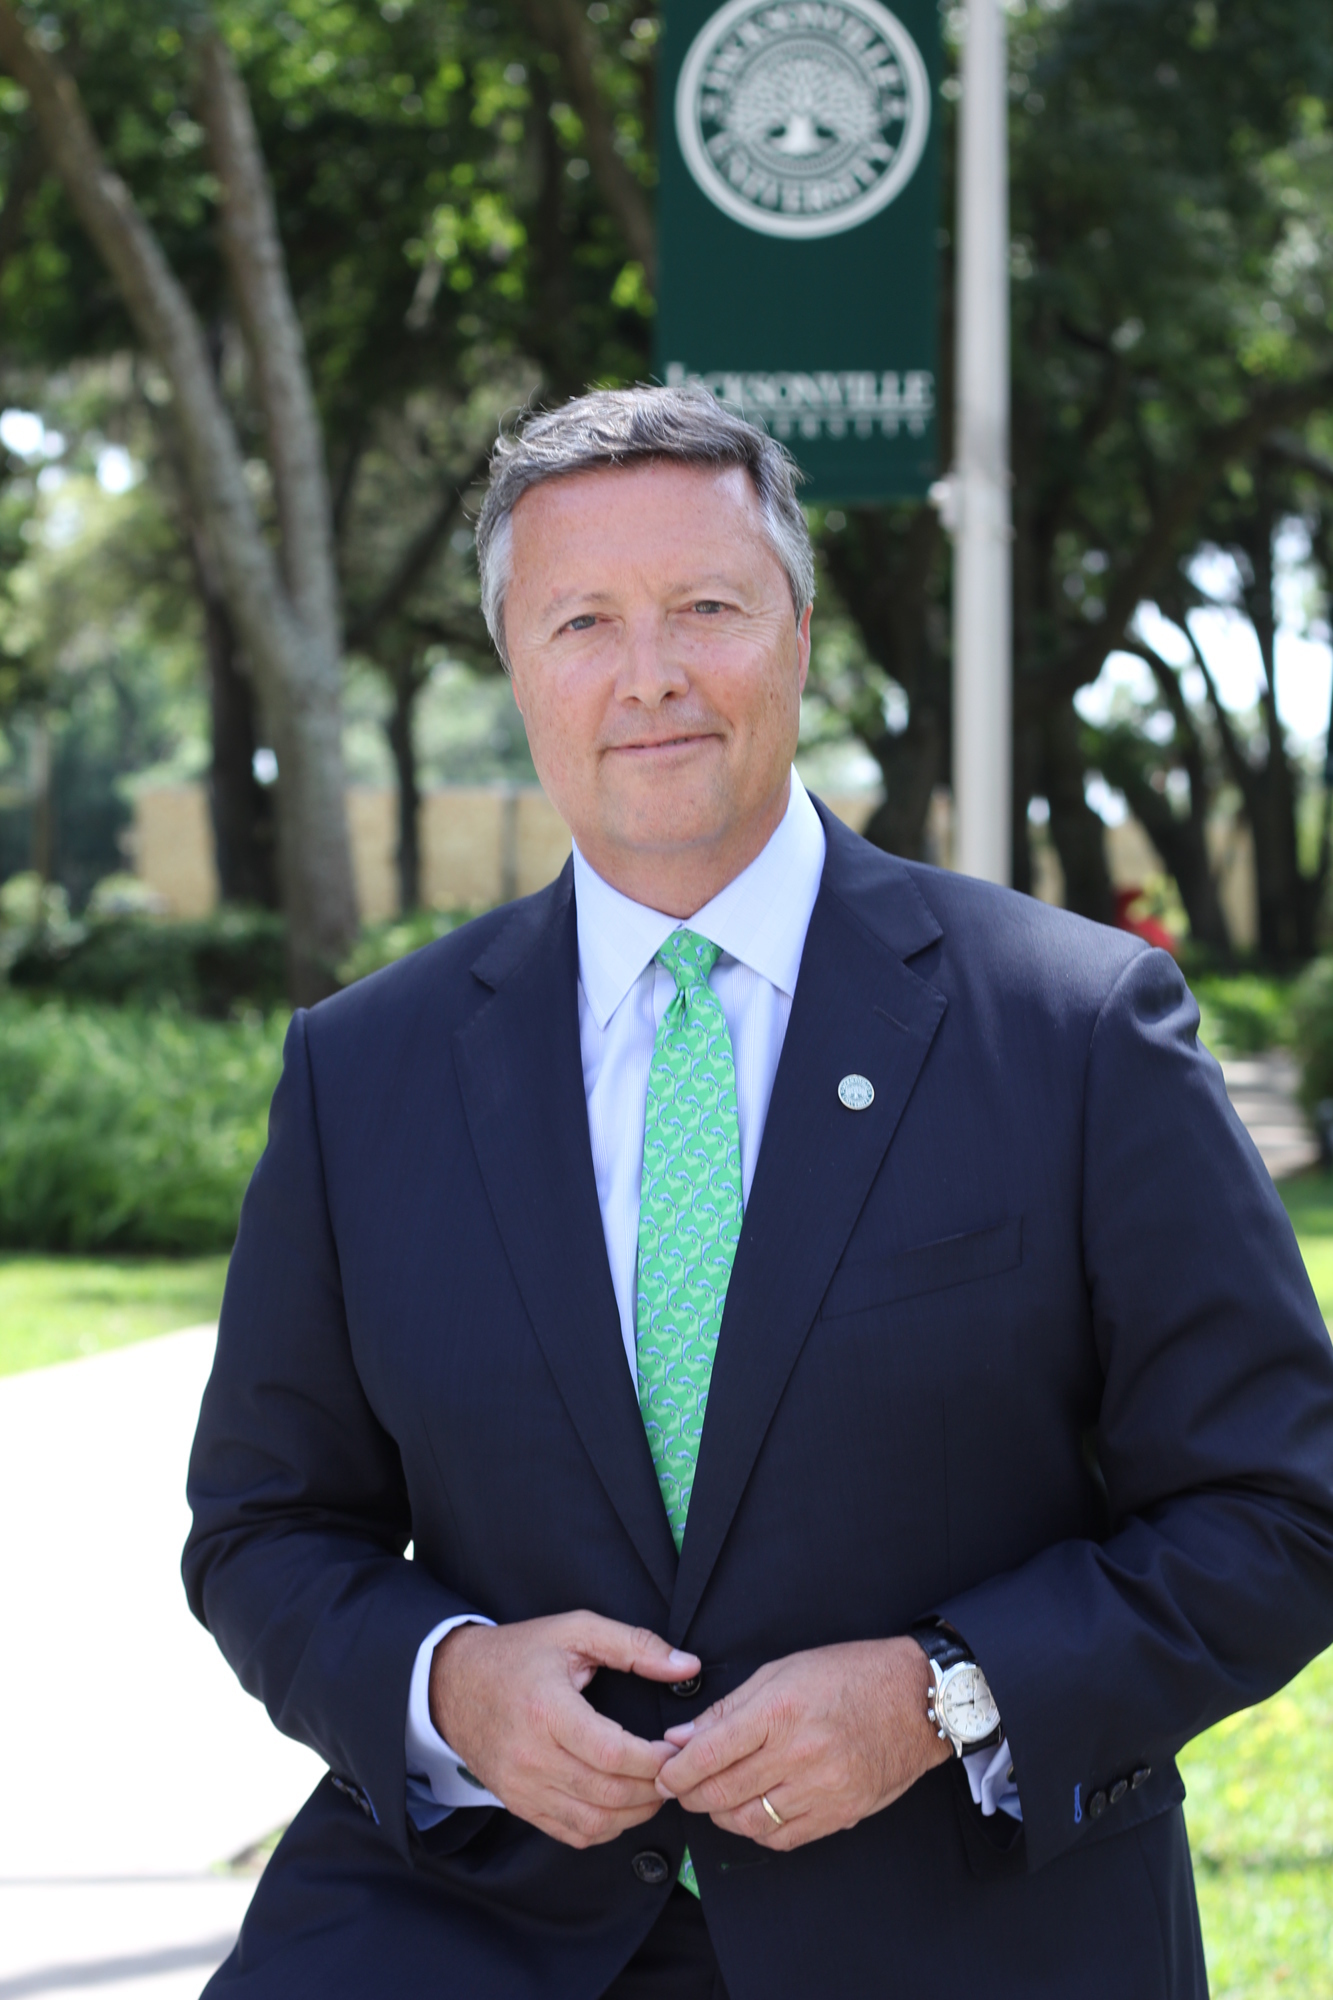 Jacksonville University President Tim Cost.